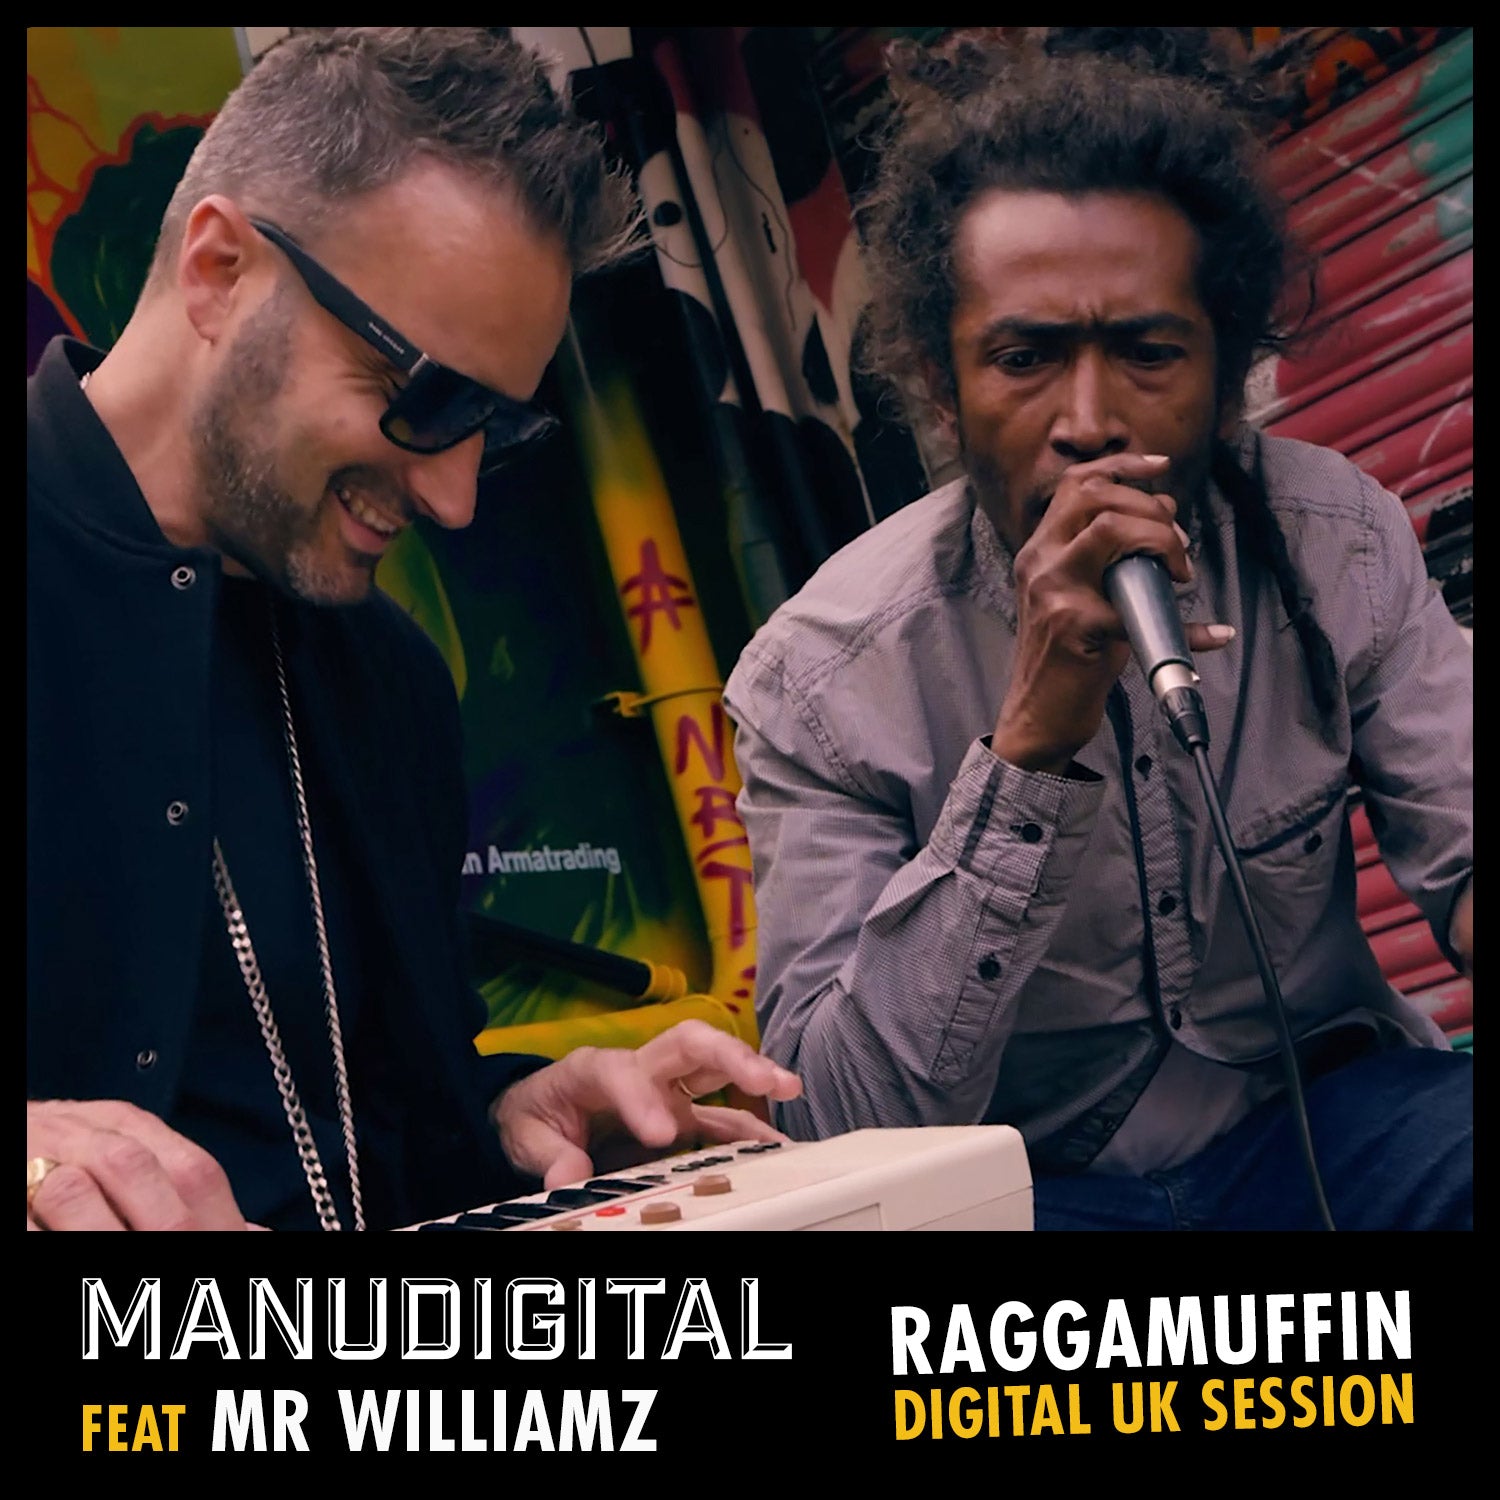 Manudigital Digital UK Session Feat Mr Williamz